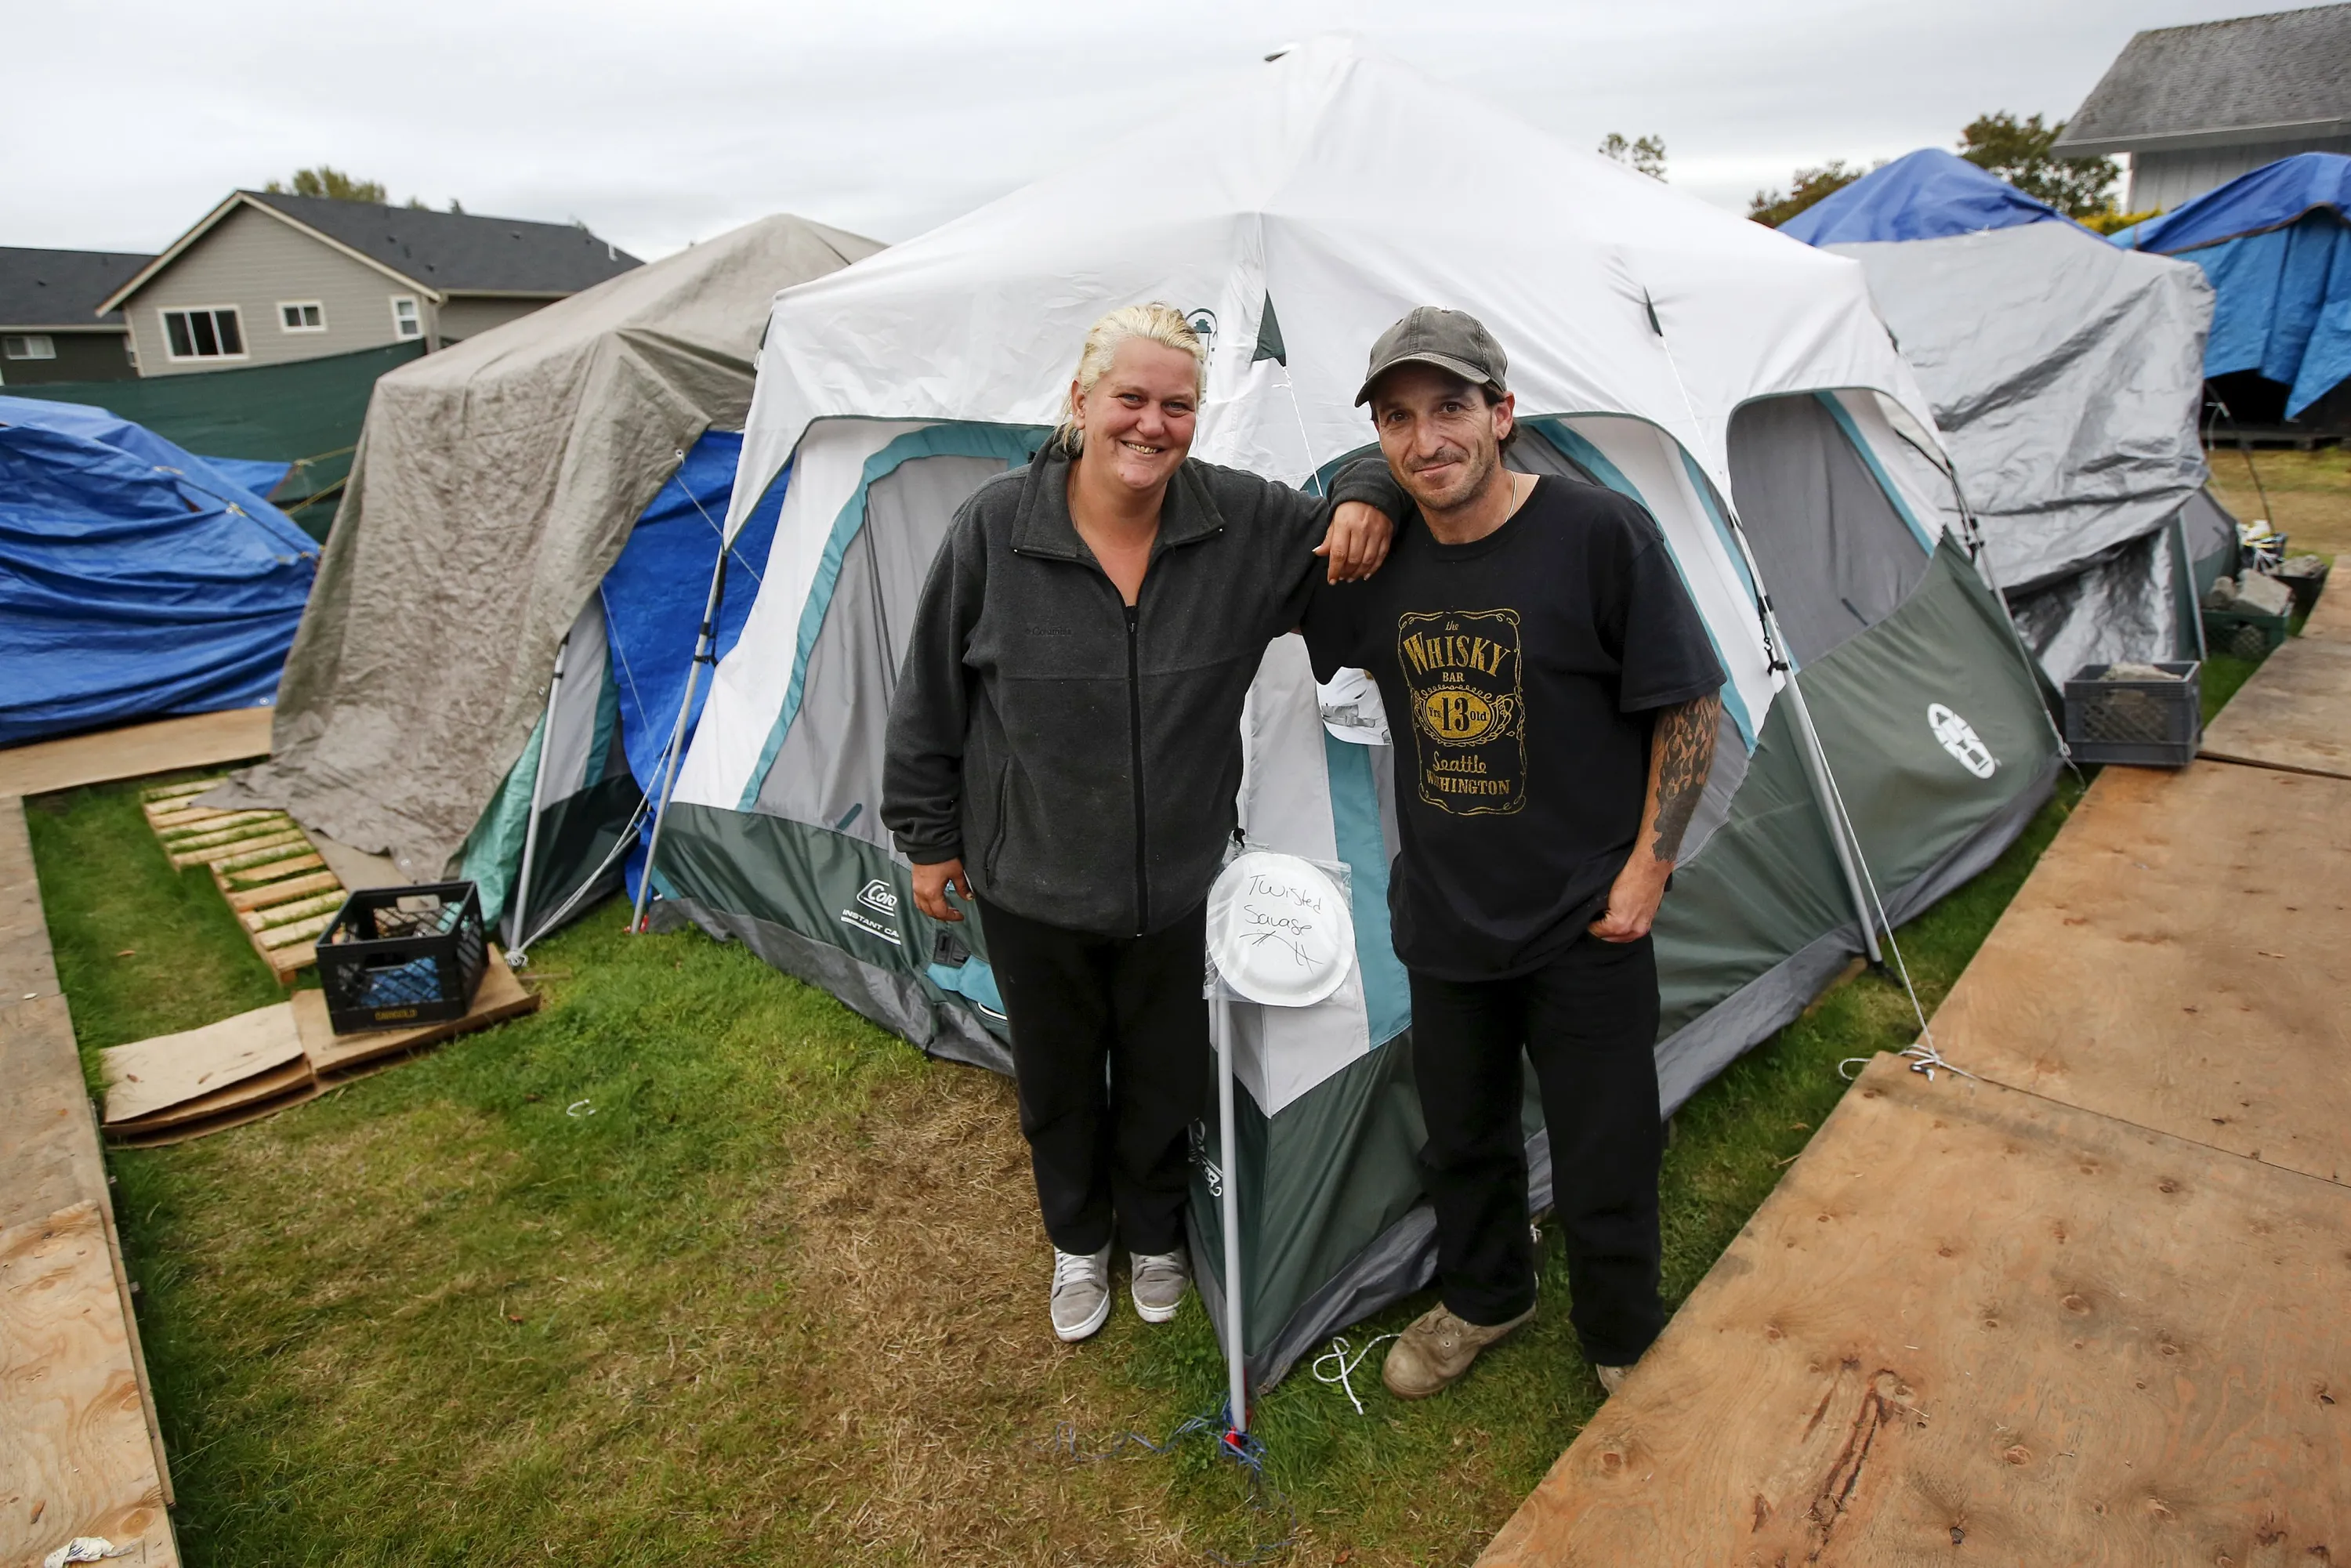 Бомжи в палатке. Лос Анджелес лагерь бомжей. Палаточные городки бездомных в США. Палаточный лагерь бомжей Лос-Анджелес. Палаточные лагеря в США.